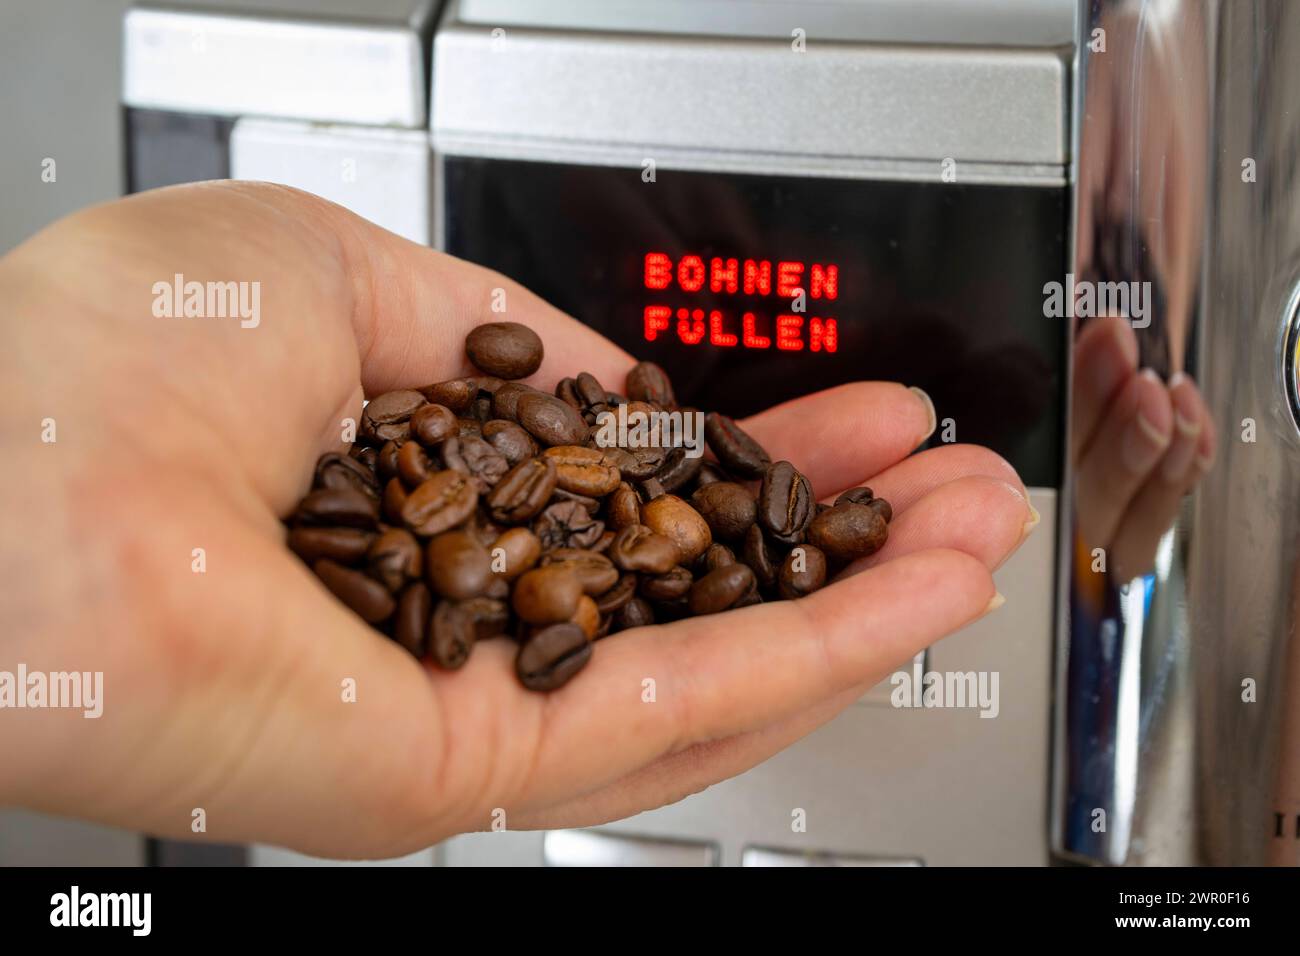 10.03.2024, Symbolbild: Der Kaffee-Preis steigt bald wieder. Kaffeemaschine Fordert BOHNEN FÜLLEN 10.03.2024, Der Kaffee-Preis steigt Cald wieder 10.03.2024, Der Kaffee-Preis steigt Bald wieder *** 10 03 2024, immagine simbolica il prezzo del caffè aumenterà presto di nuovo la macchina del caffè richiede il RIEMPIMENTO DEI RUBINETTI 10 03 2024, il prezzo del caffè aumenterà presto di nuovo 10 03 2024, il prezzo del caffè aumenterà presto di nuovo Foto Stock